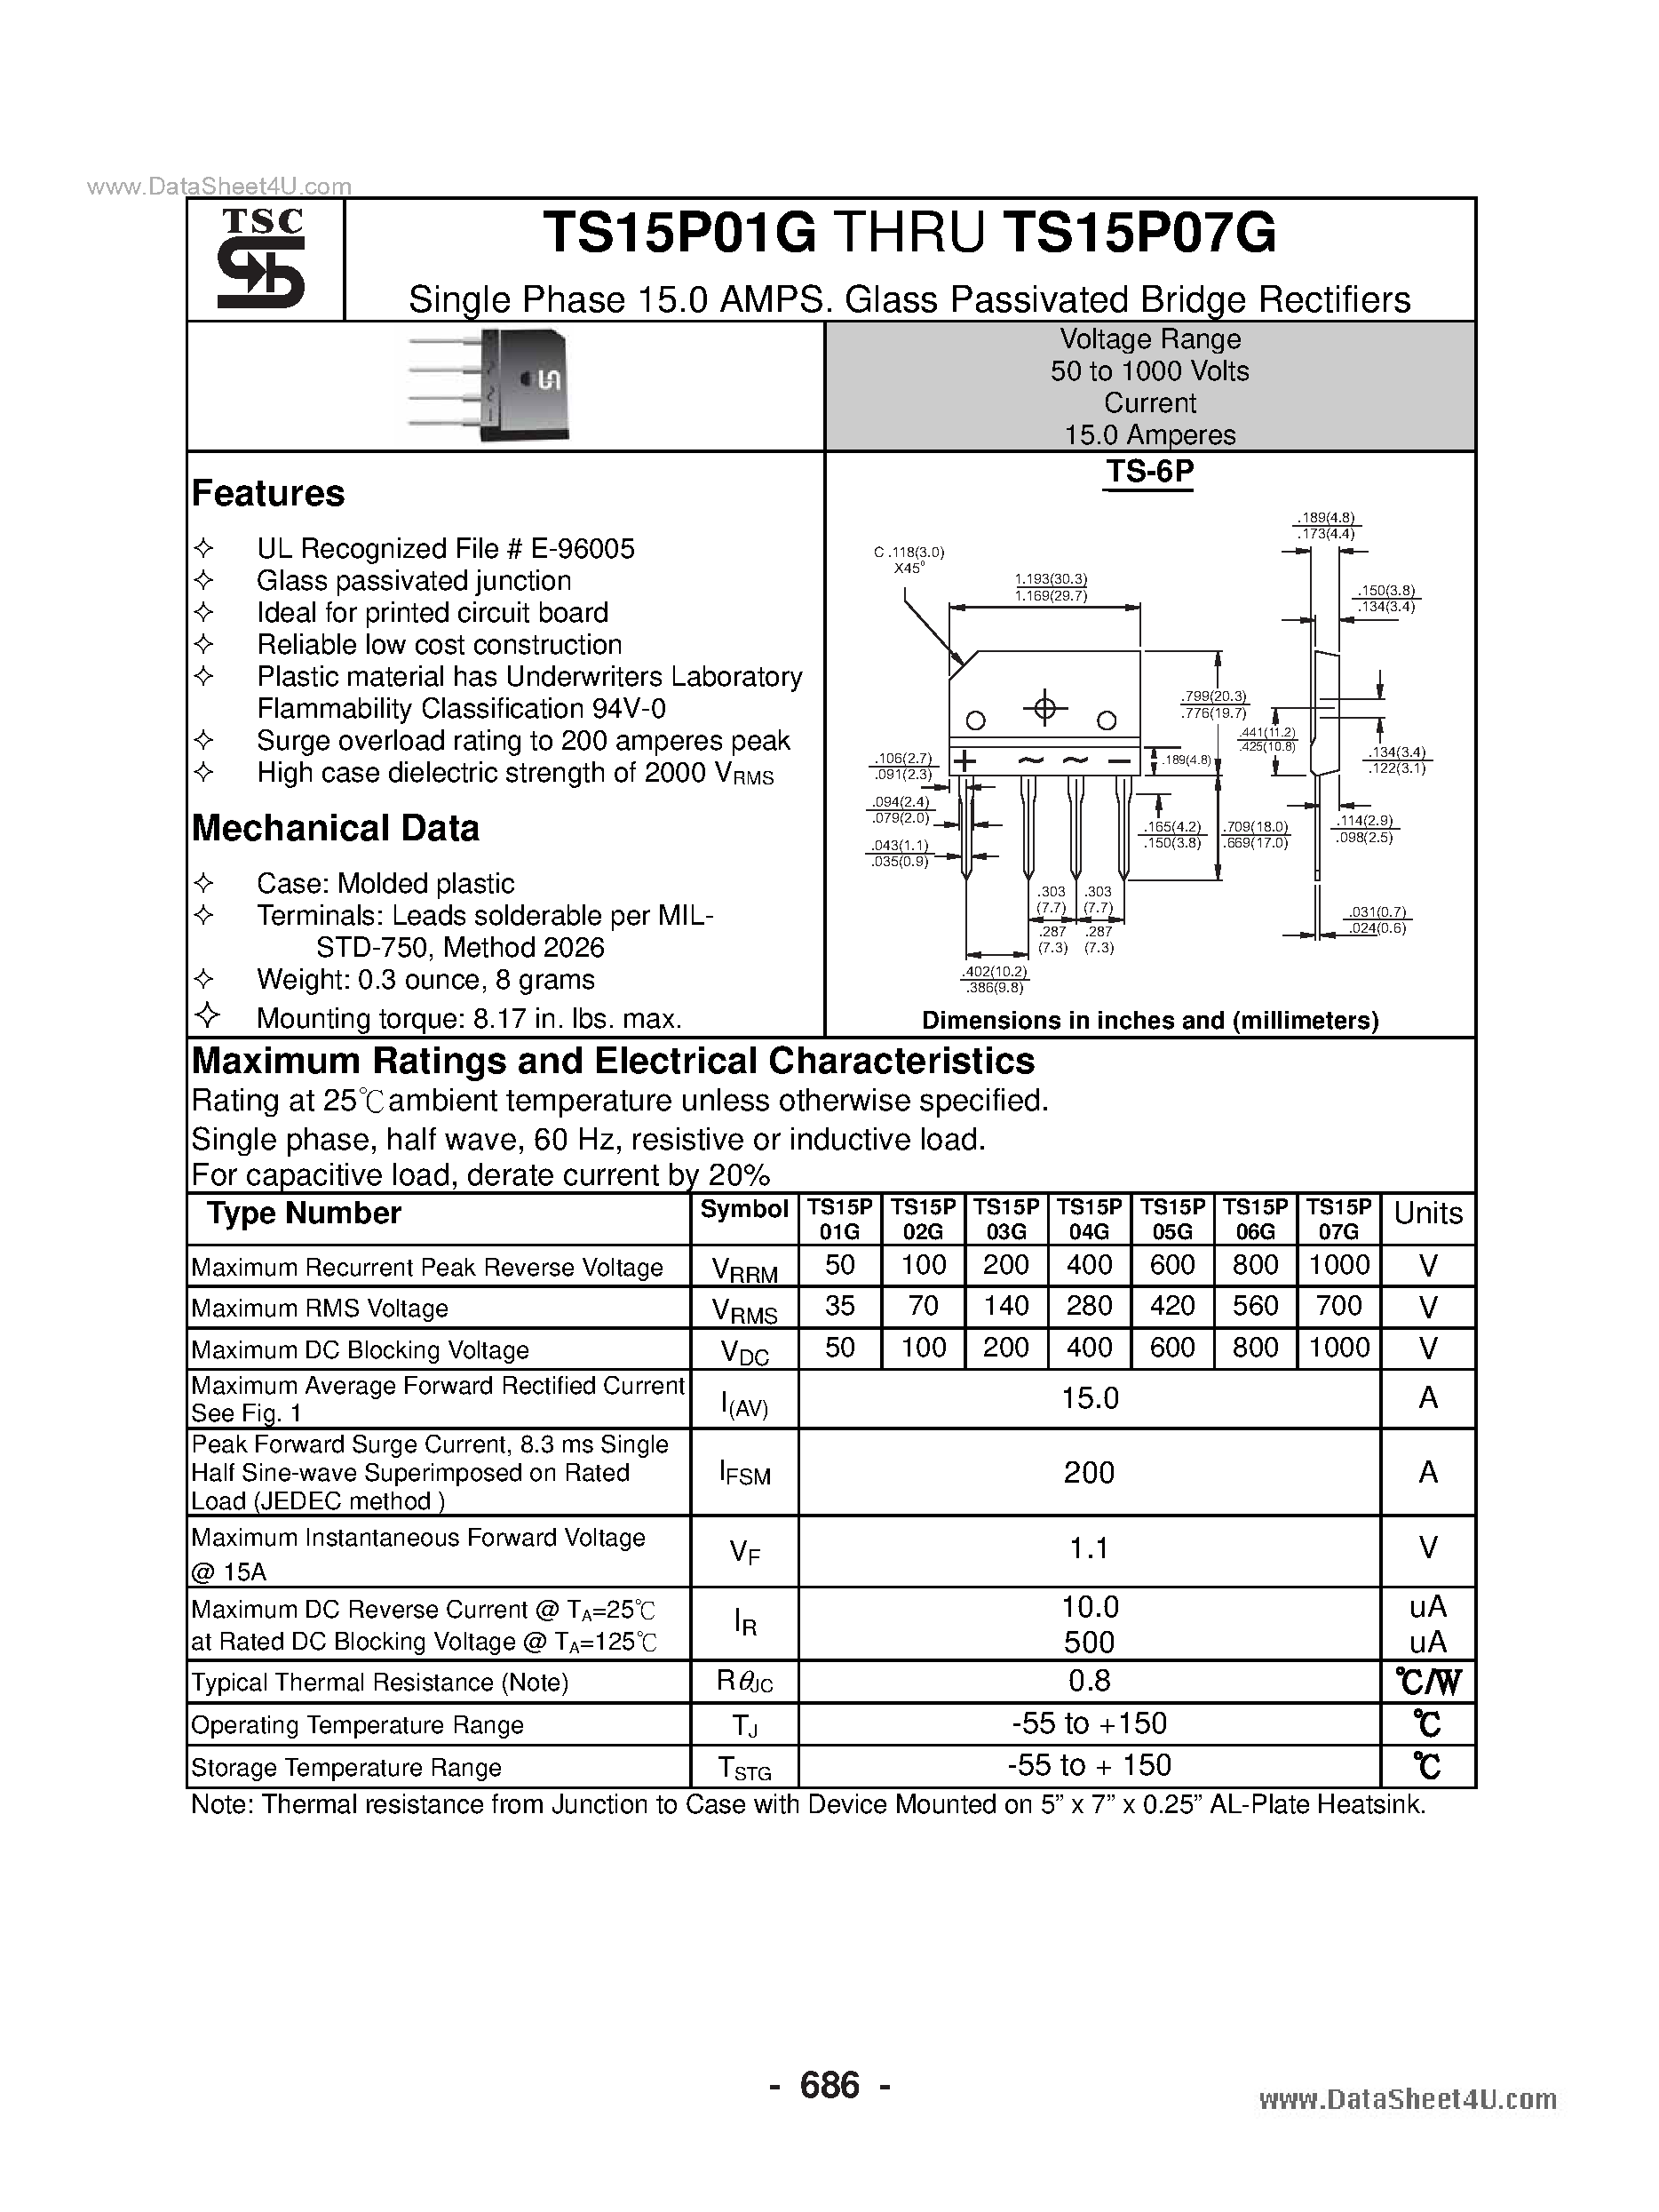 Даташит TS15P01G - (TS15P01G - TS15P07G) Glass Passivated Bridge Rectifiers страница 1